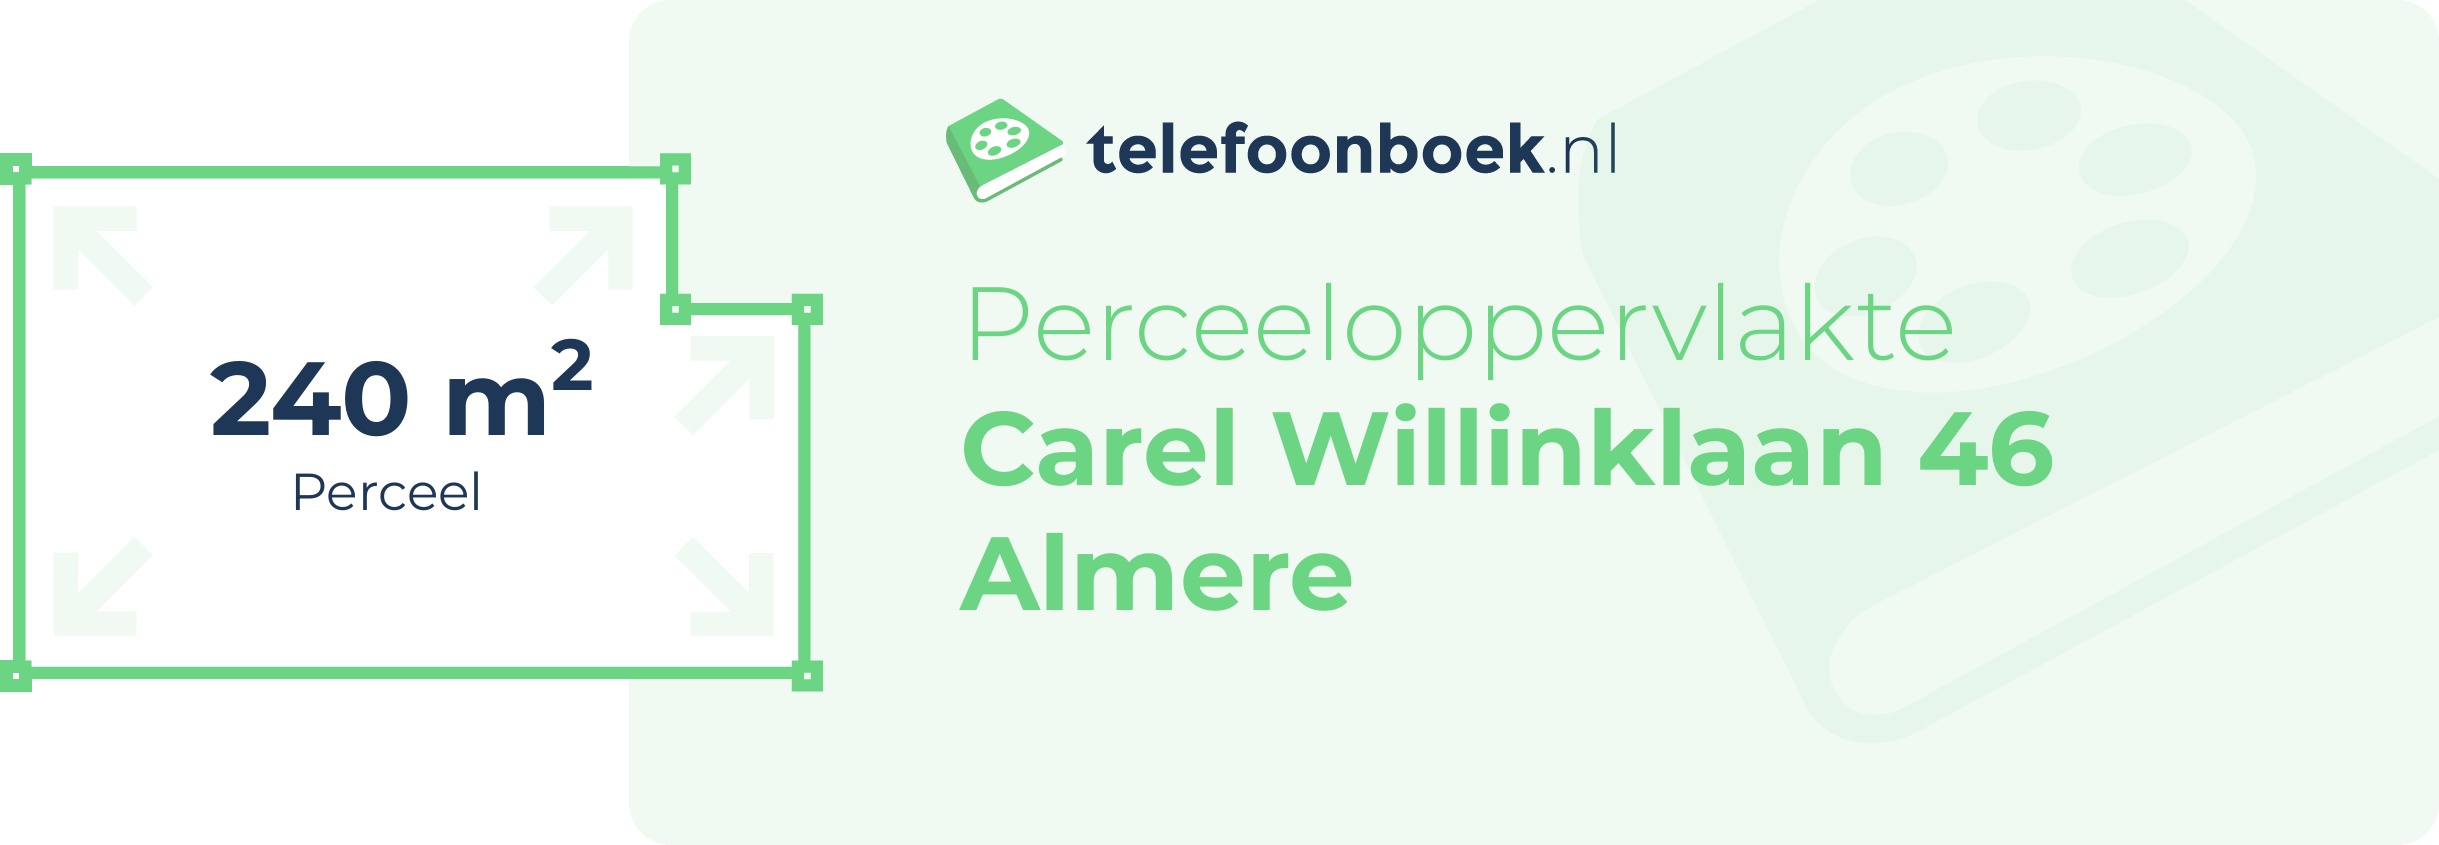 Perceeloppervlakte Carel Willinklaan 46 Almere